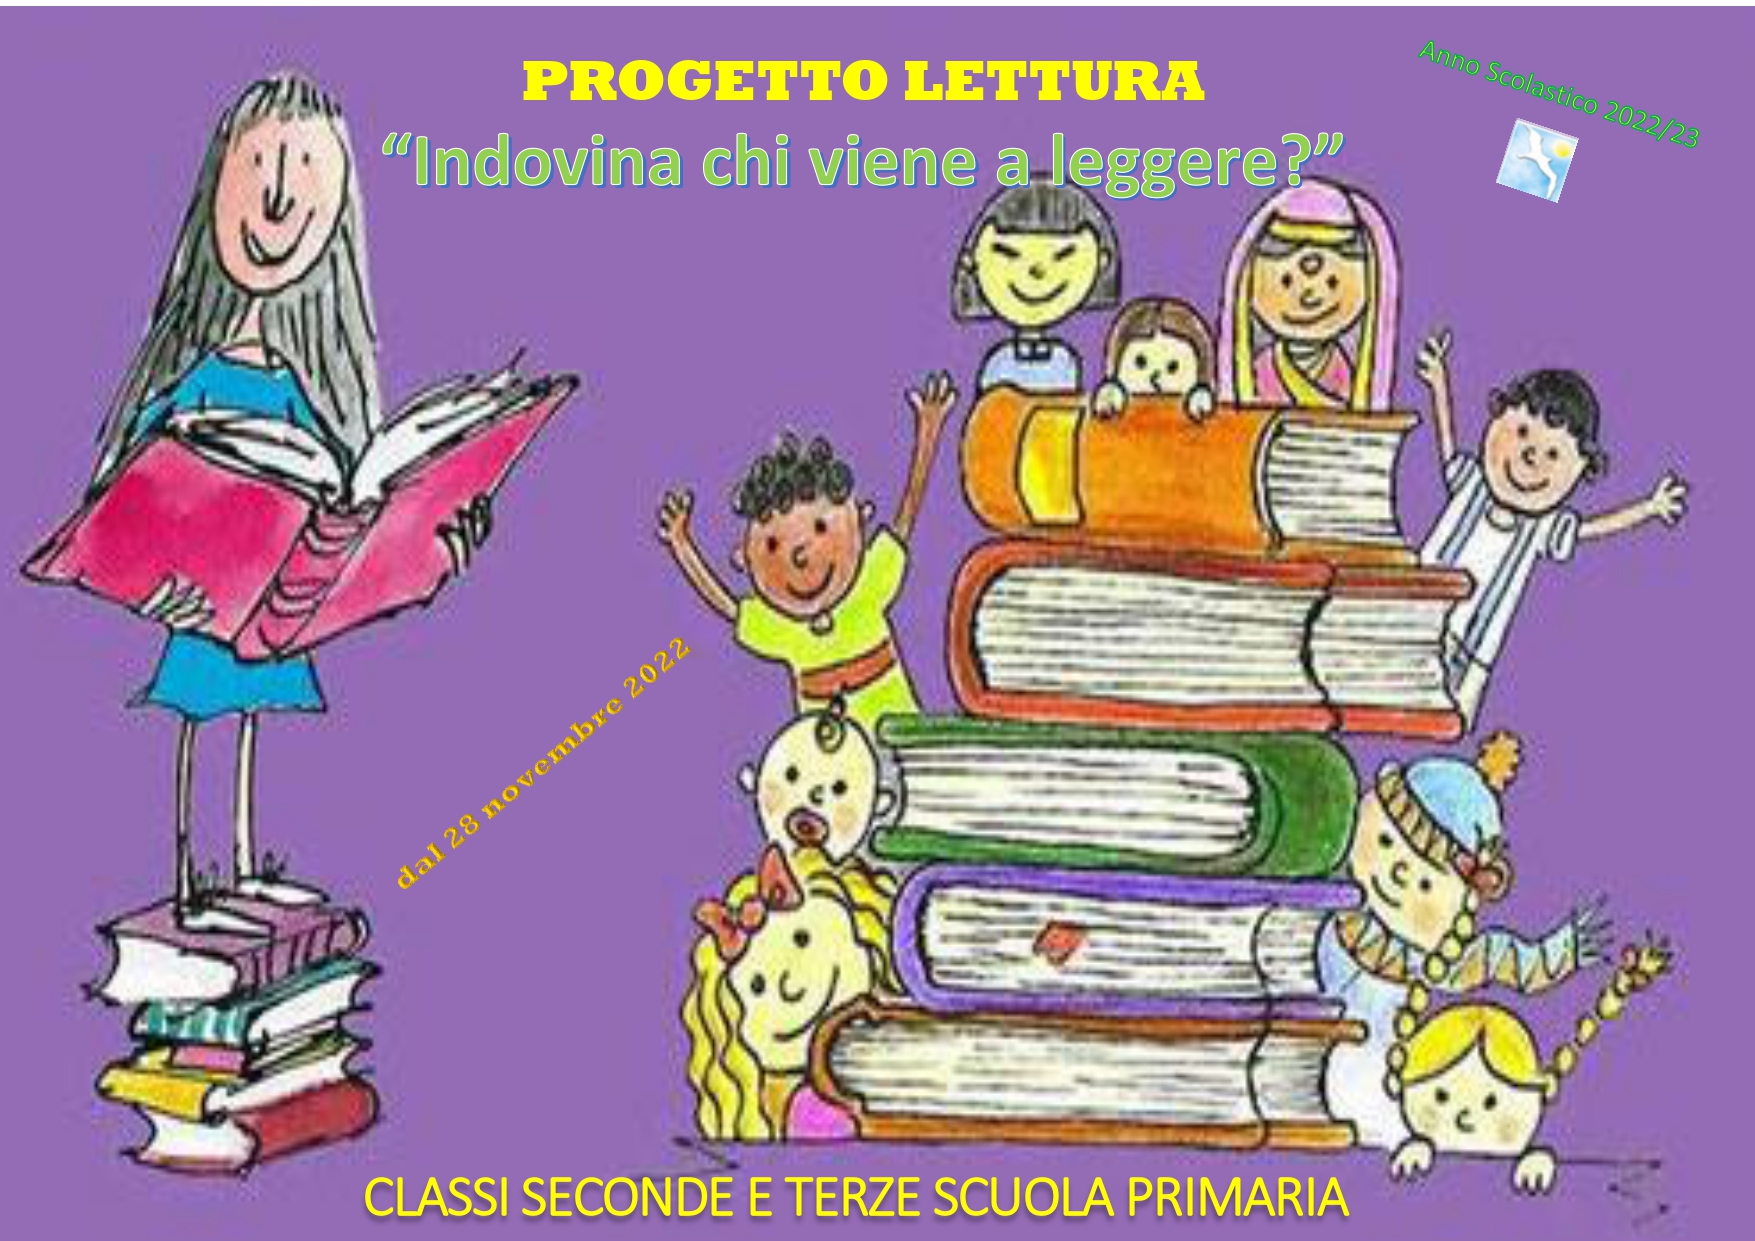 PROGETTO LETTURA page 0001 